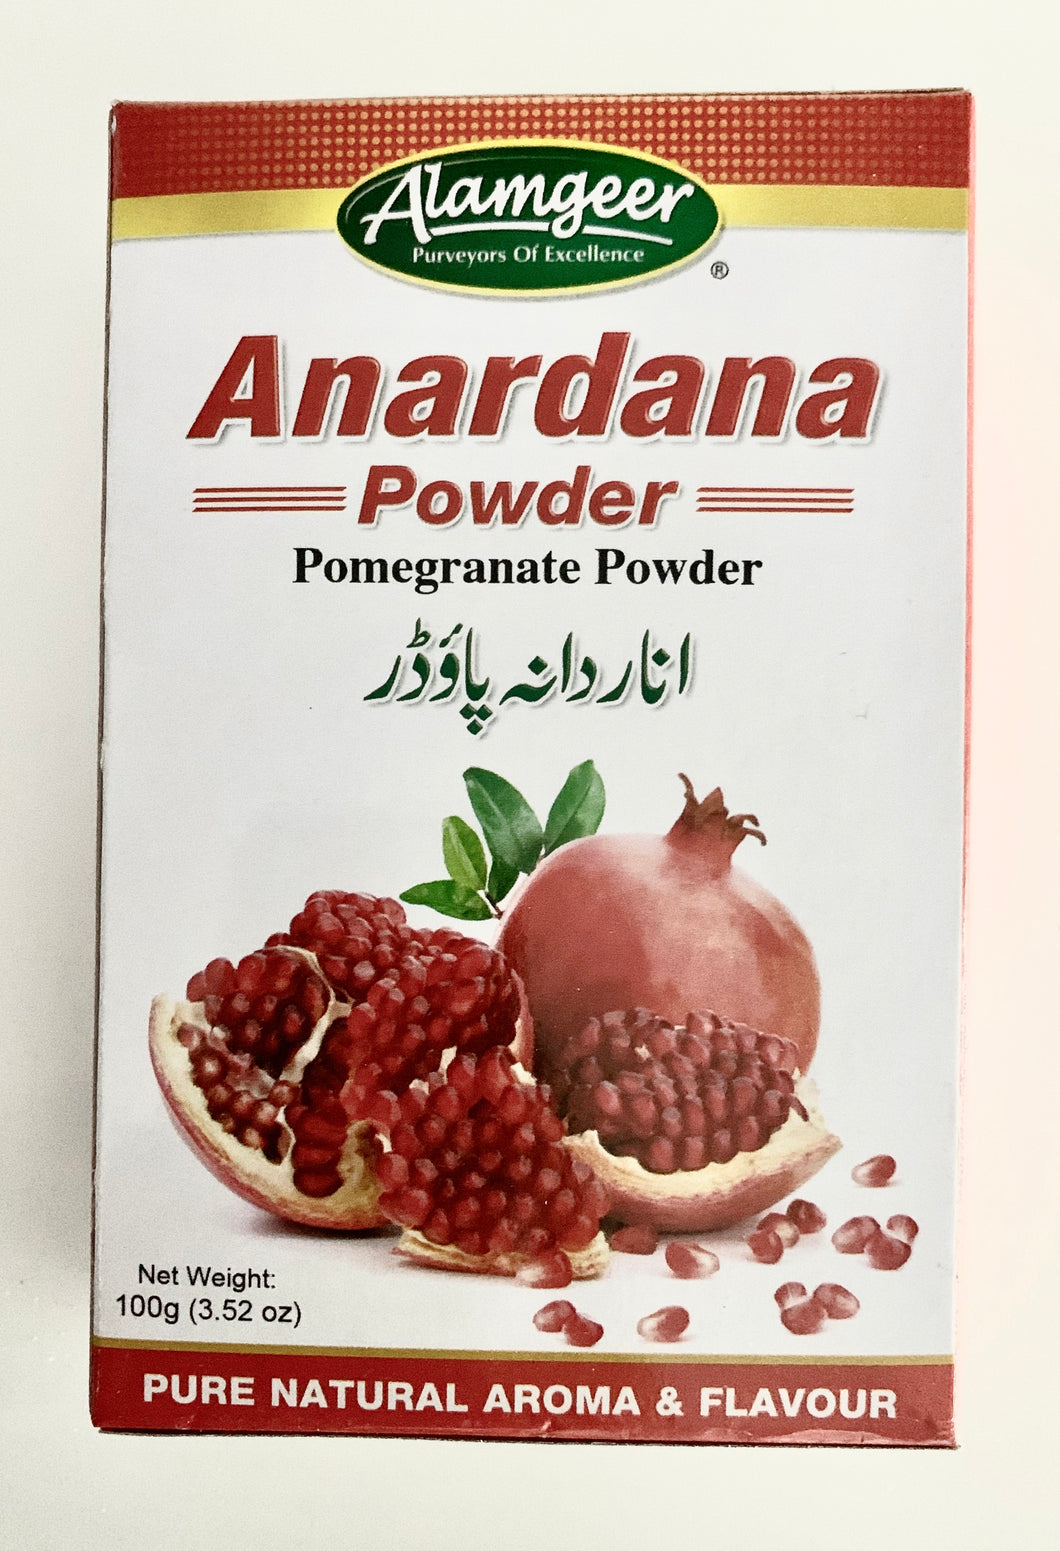 Anardana Powder (Pomegranate Powder)